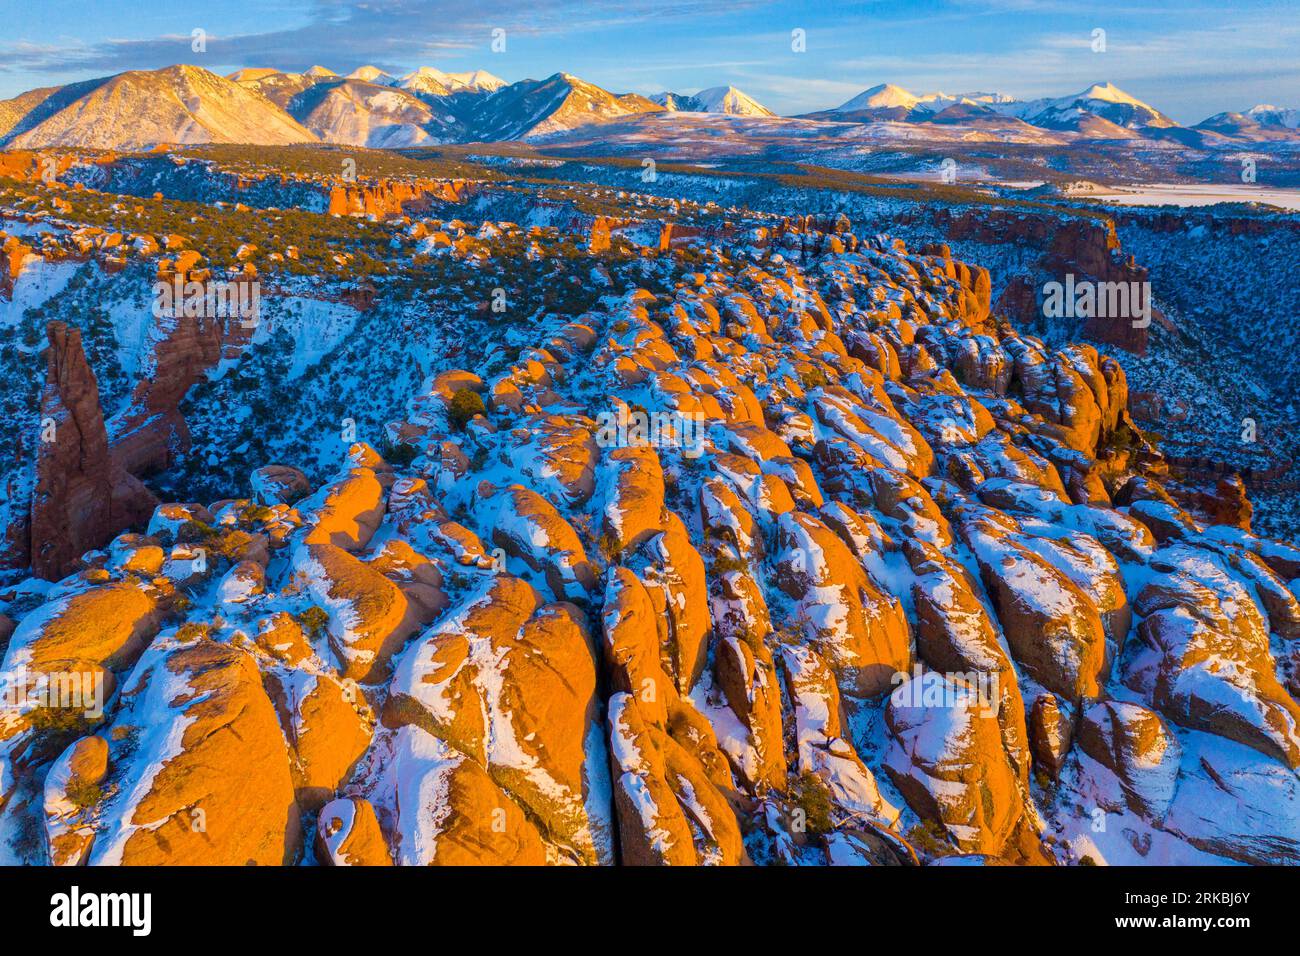 Breaking Wave Rocks et la Sal Mountains, projet BLM Wilderness près de Moab, Utah Banque D'Images